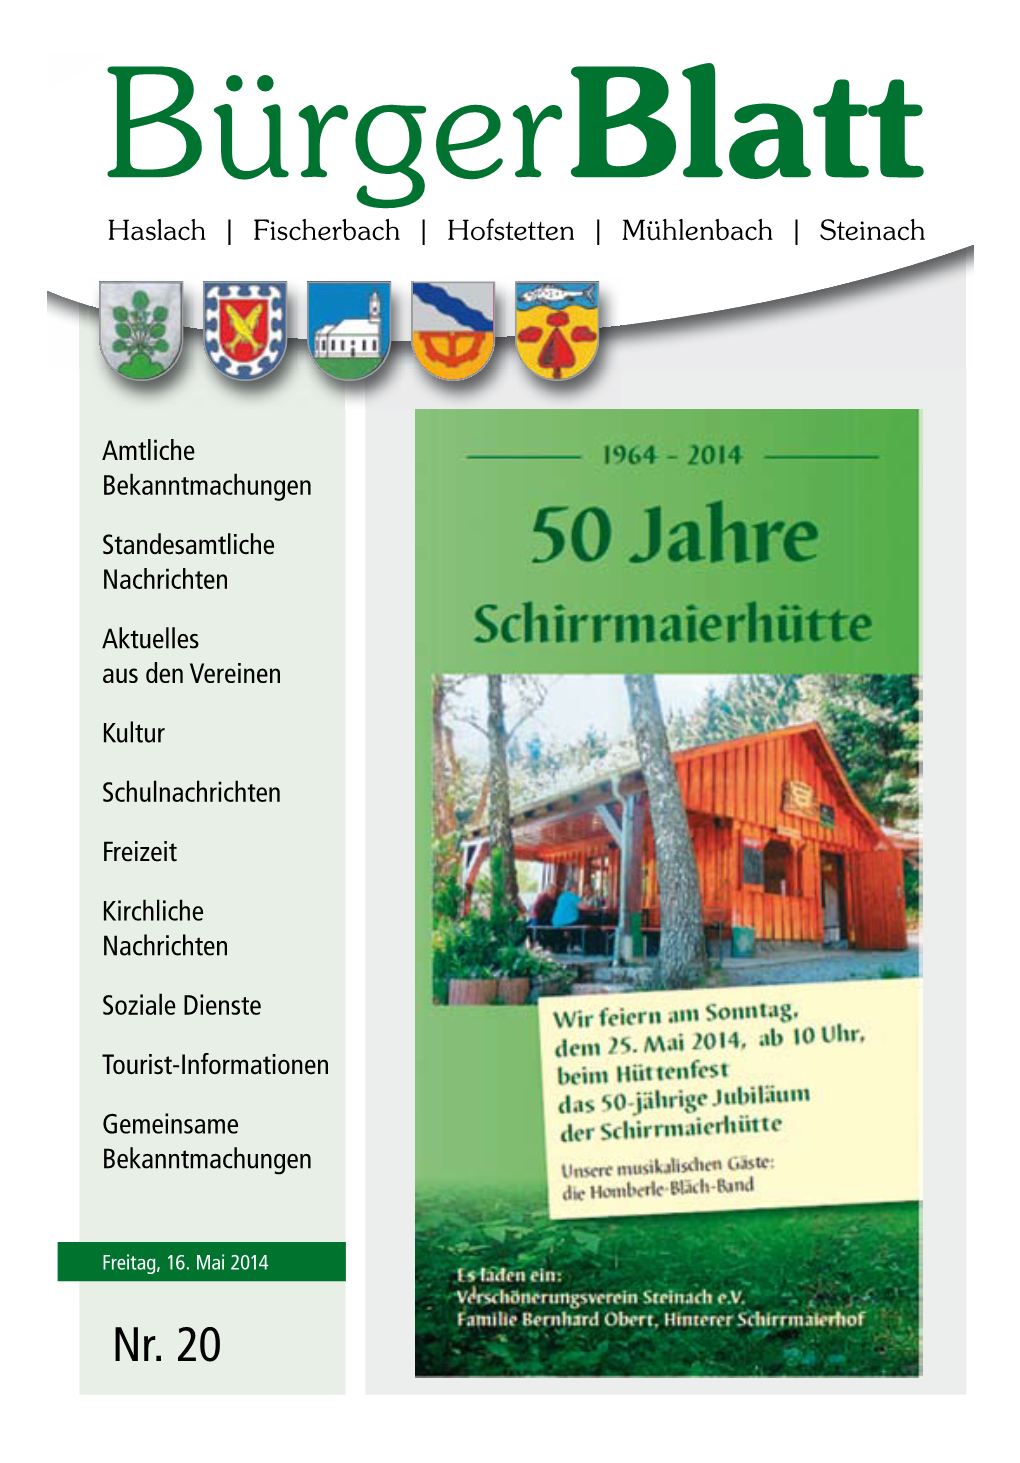 Bürgerblatt Nr. 20 Vom Freitag, 16. Mai 2014